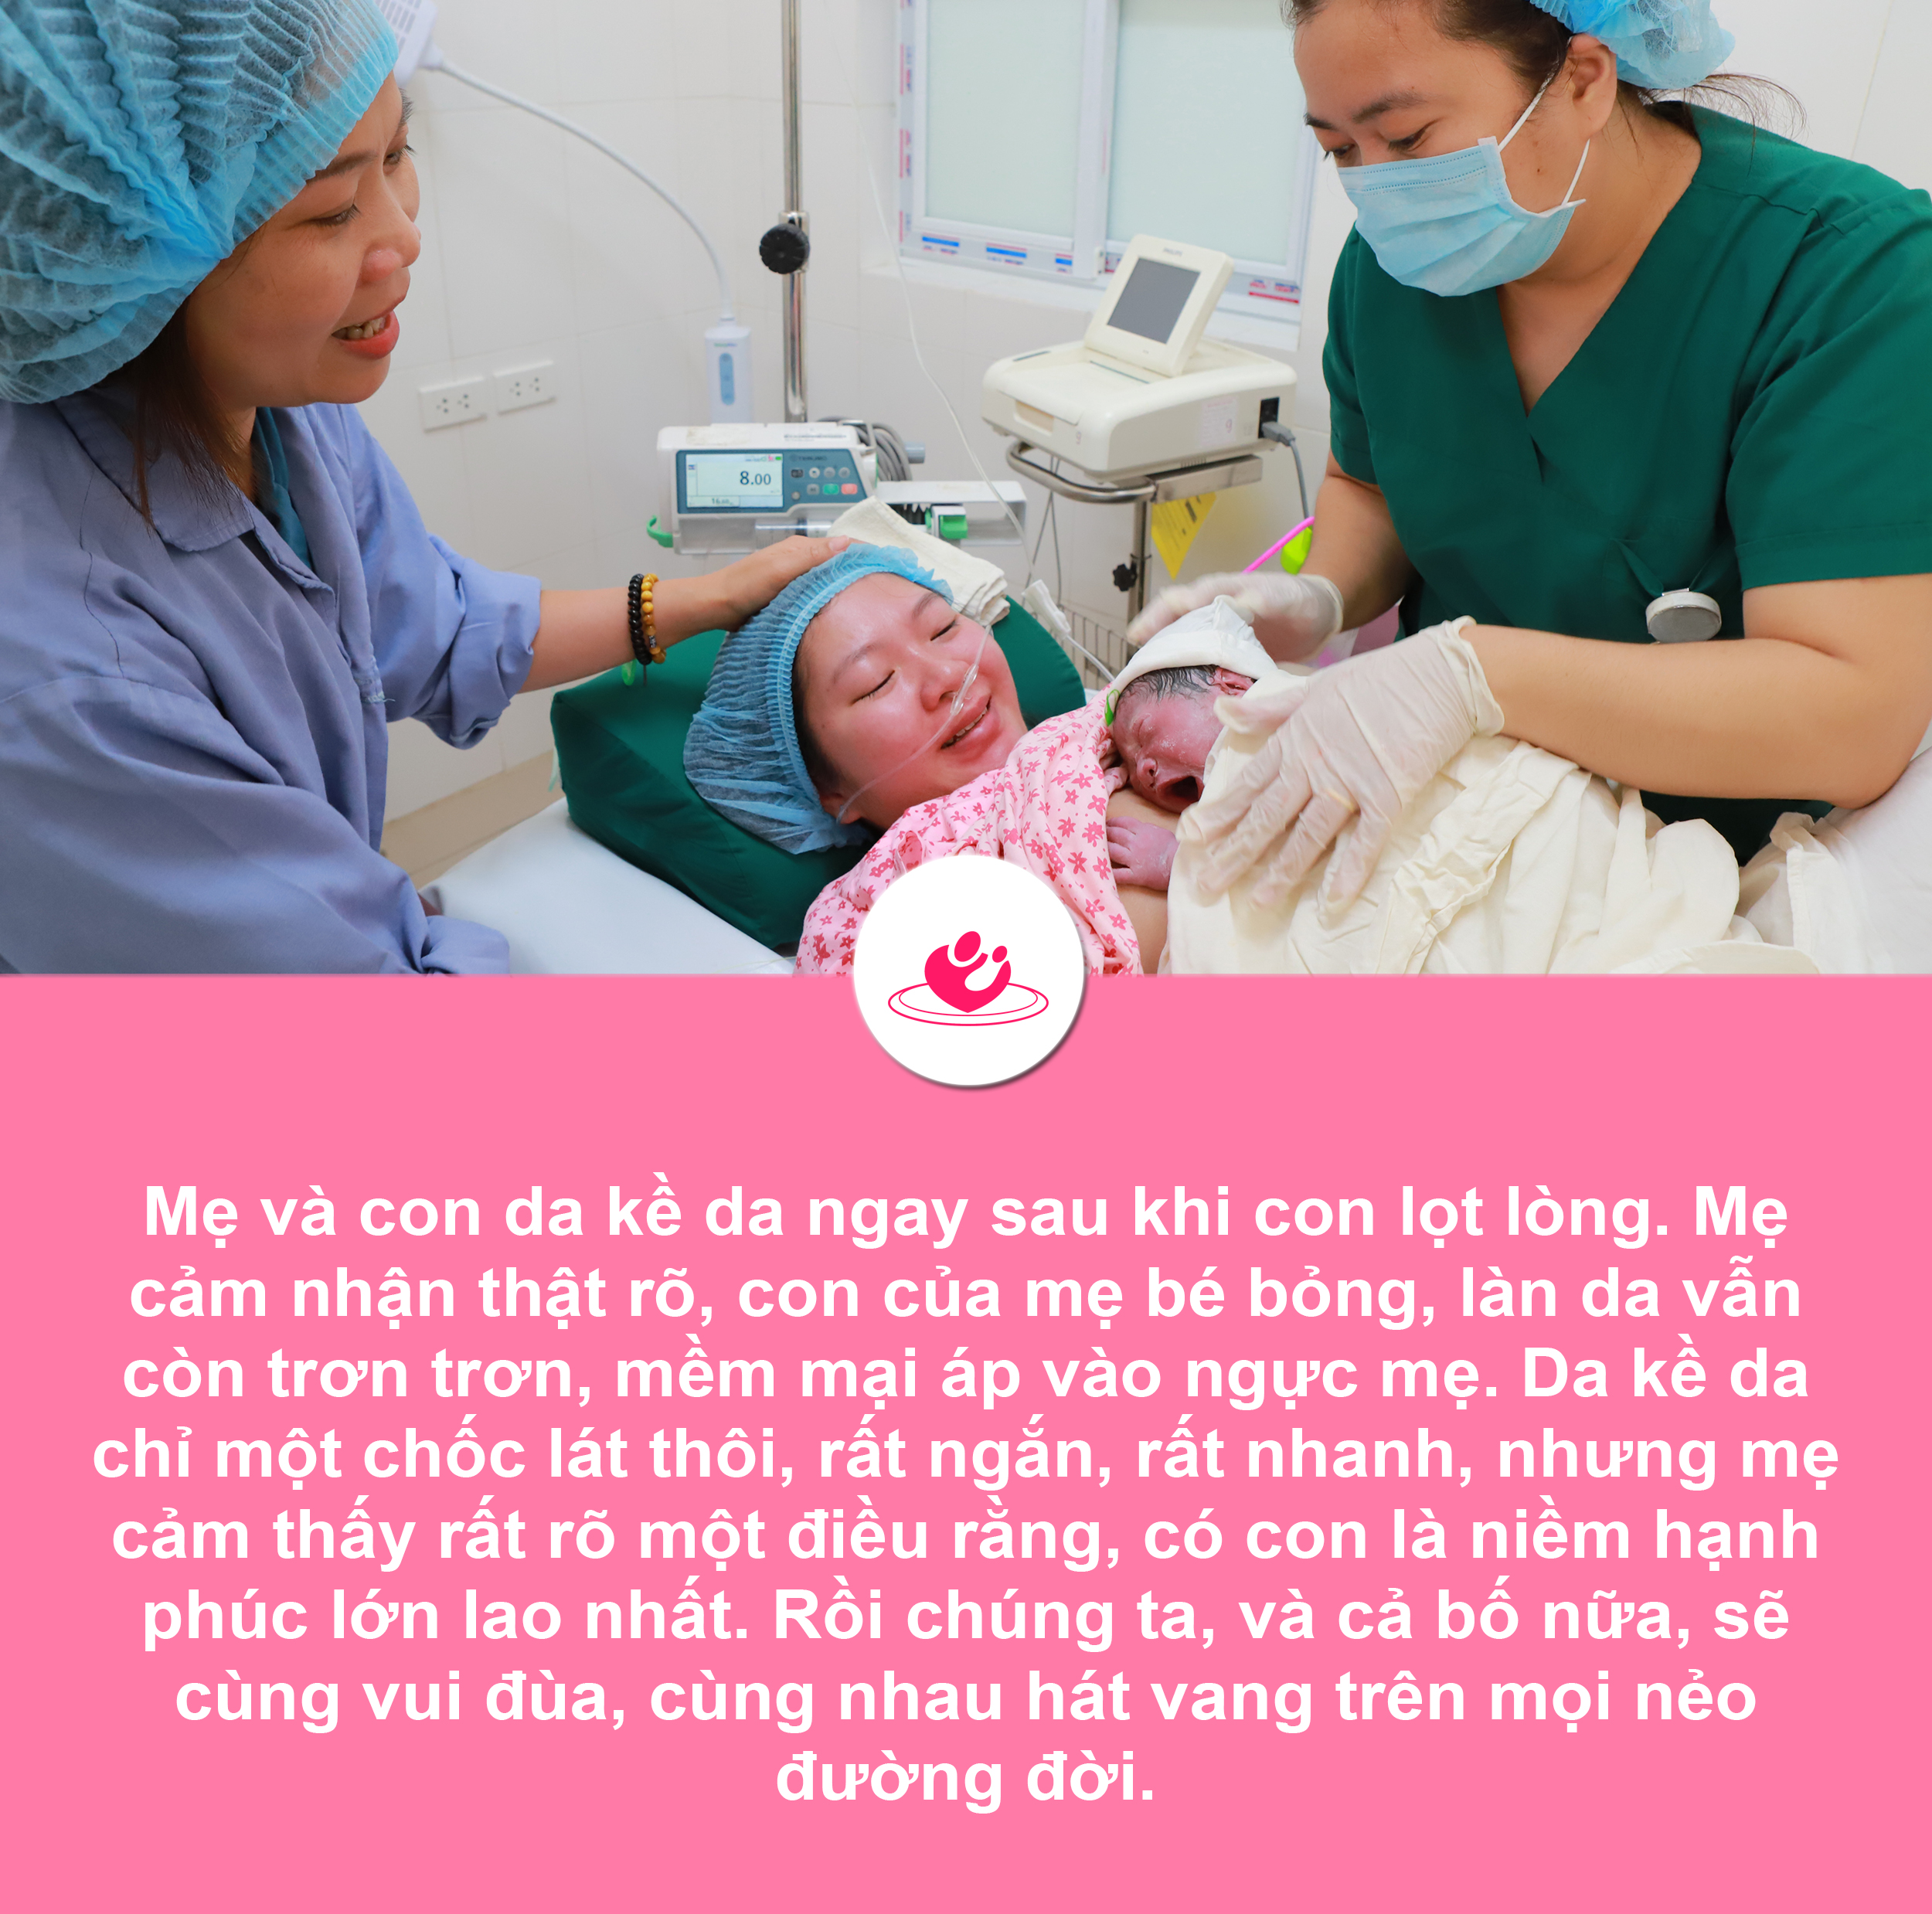 Những khoảnh khắc không thể quên của người mẹ khi sinh con ở Bệnh viện Phụ sản Hà Nội 9